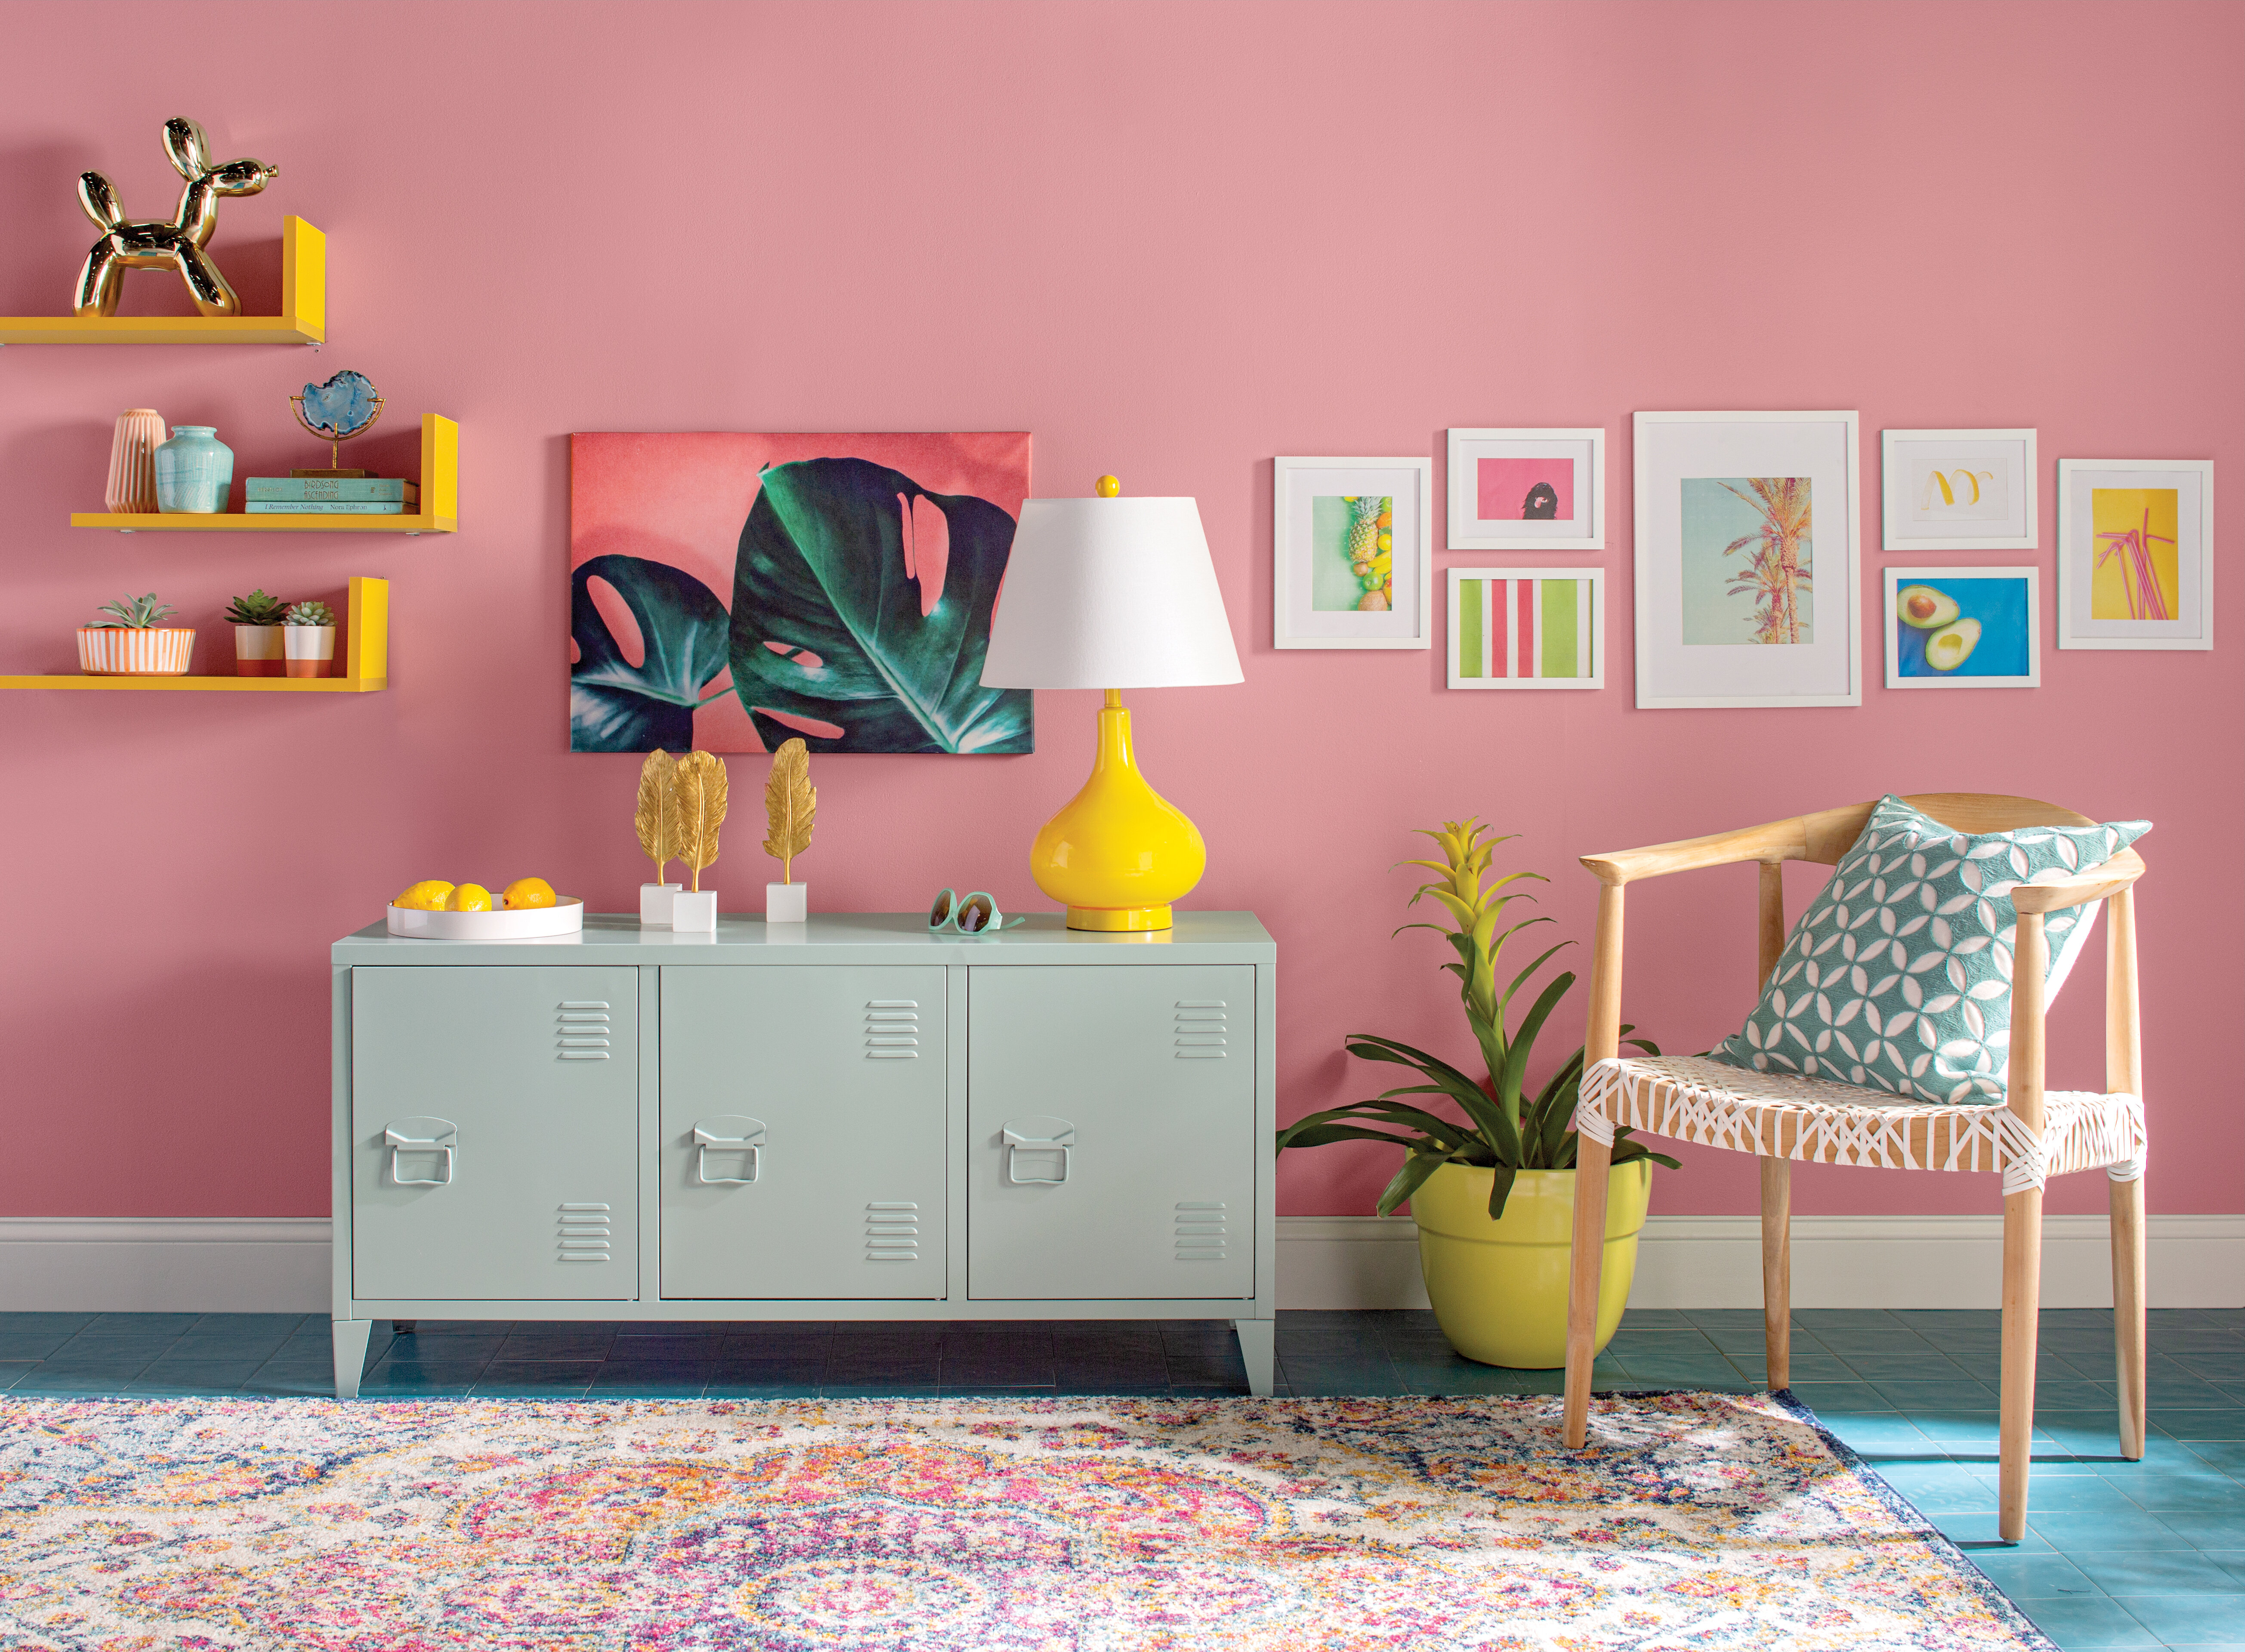 غرفة المعيشة مزينة بألوان ثلاثية وردية وزرقاء وصفراء